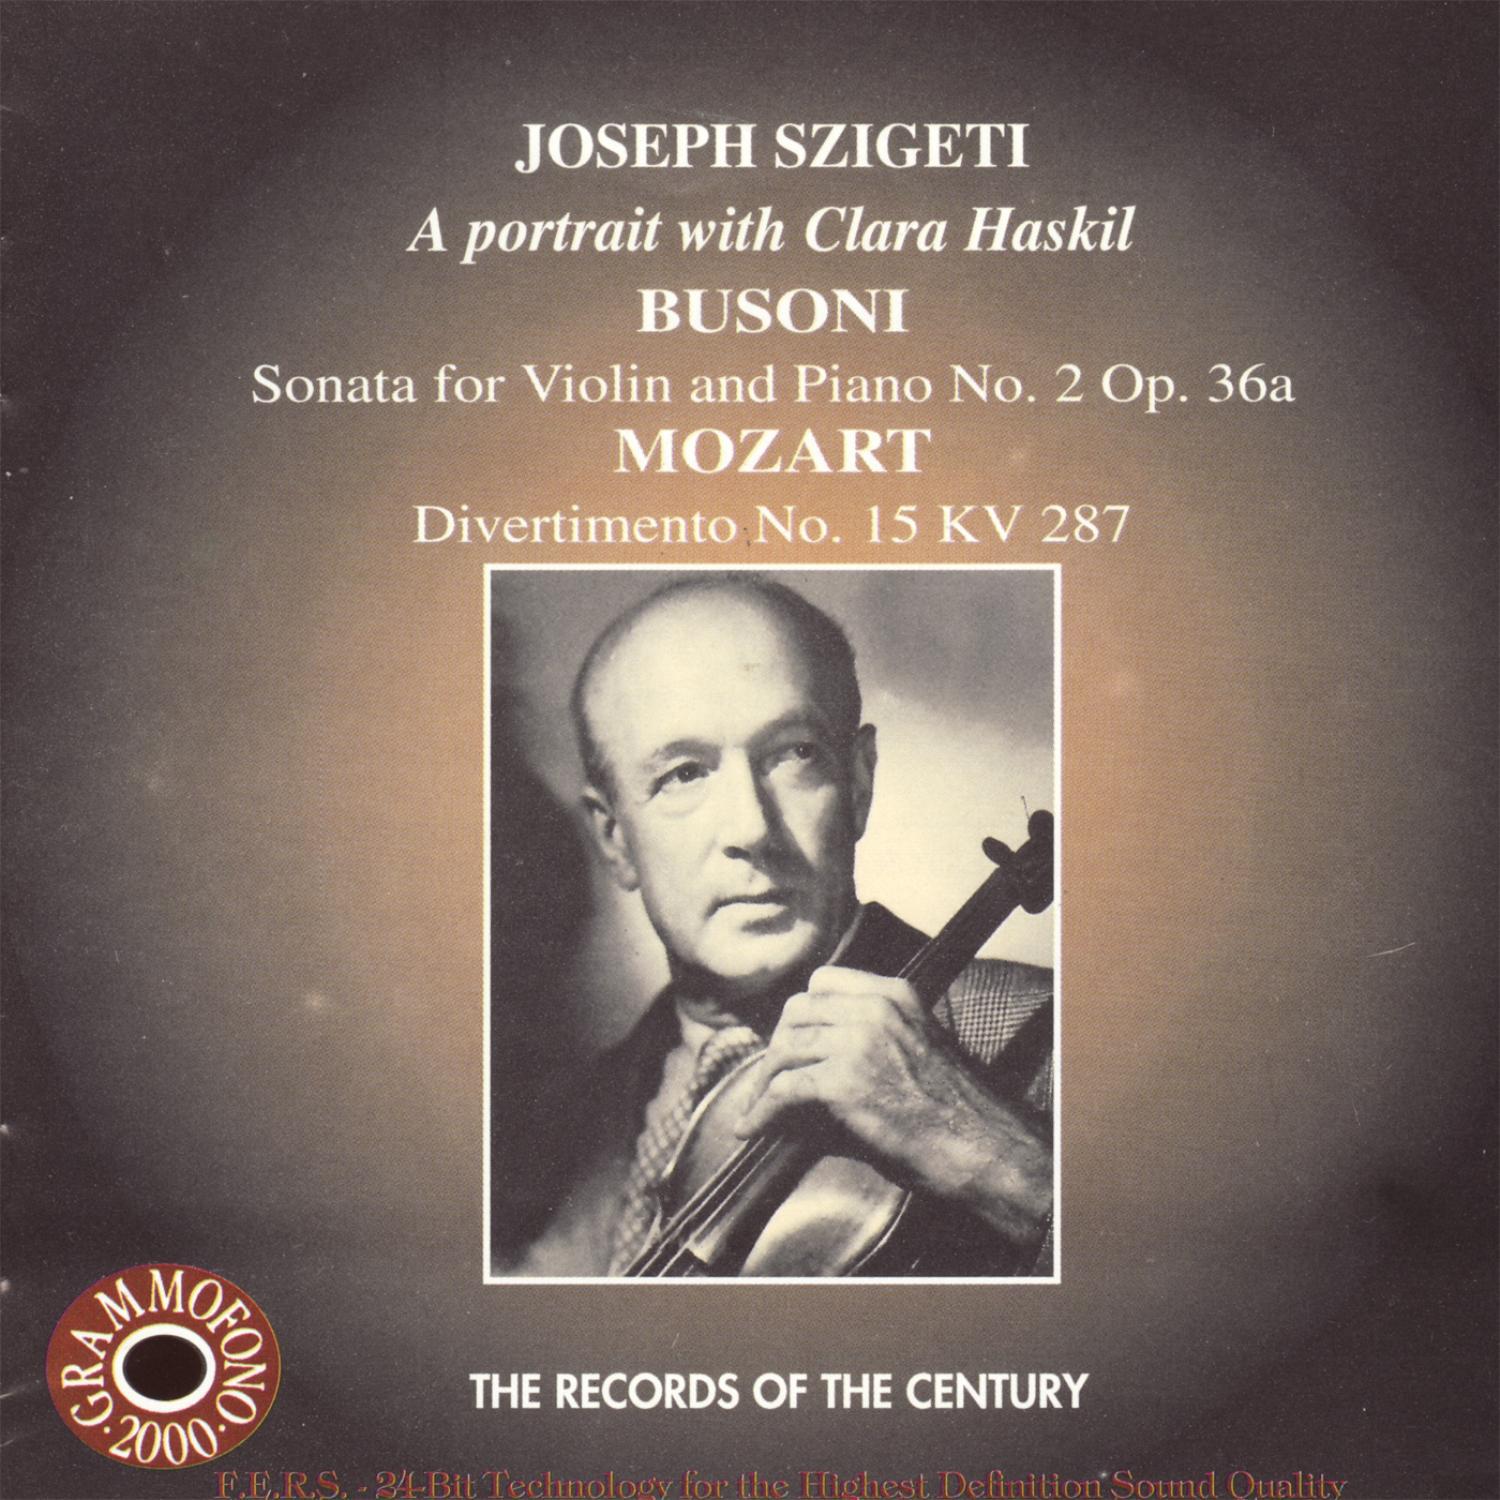 Szigeti Plays Busoni & Mozart - A Portrait With Clara Haskil